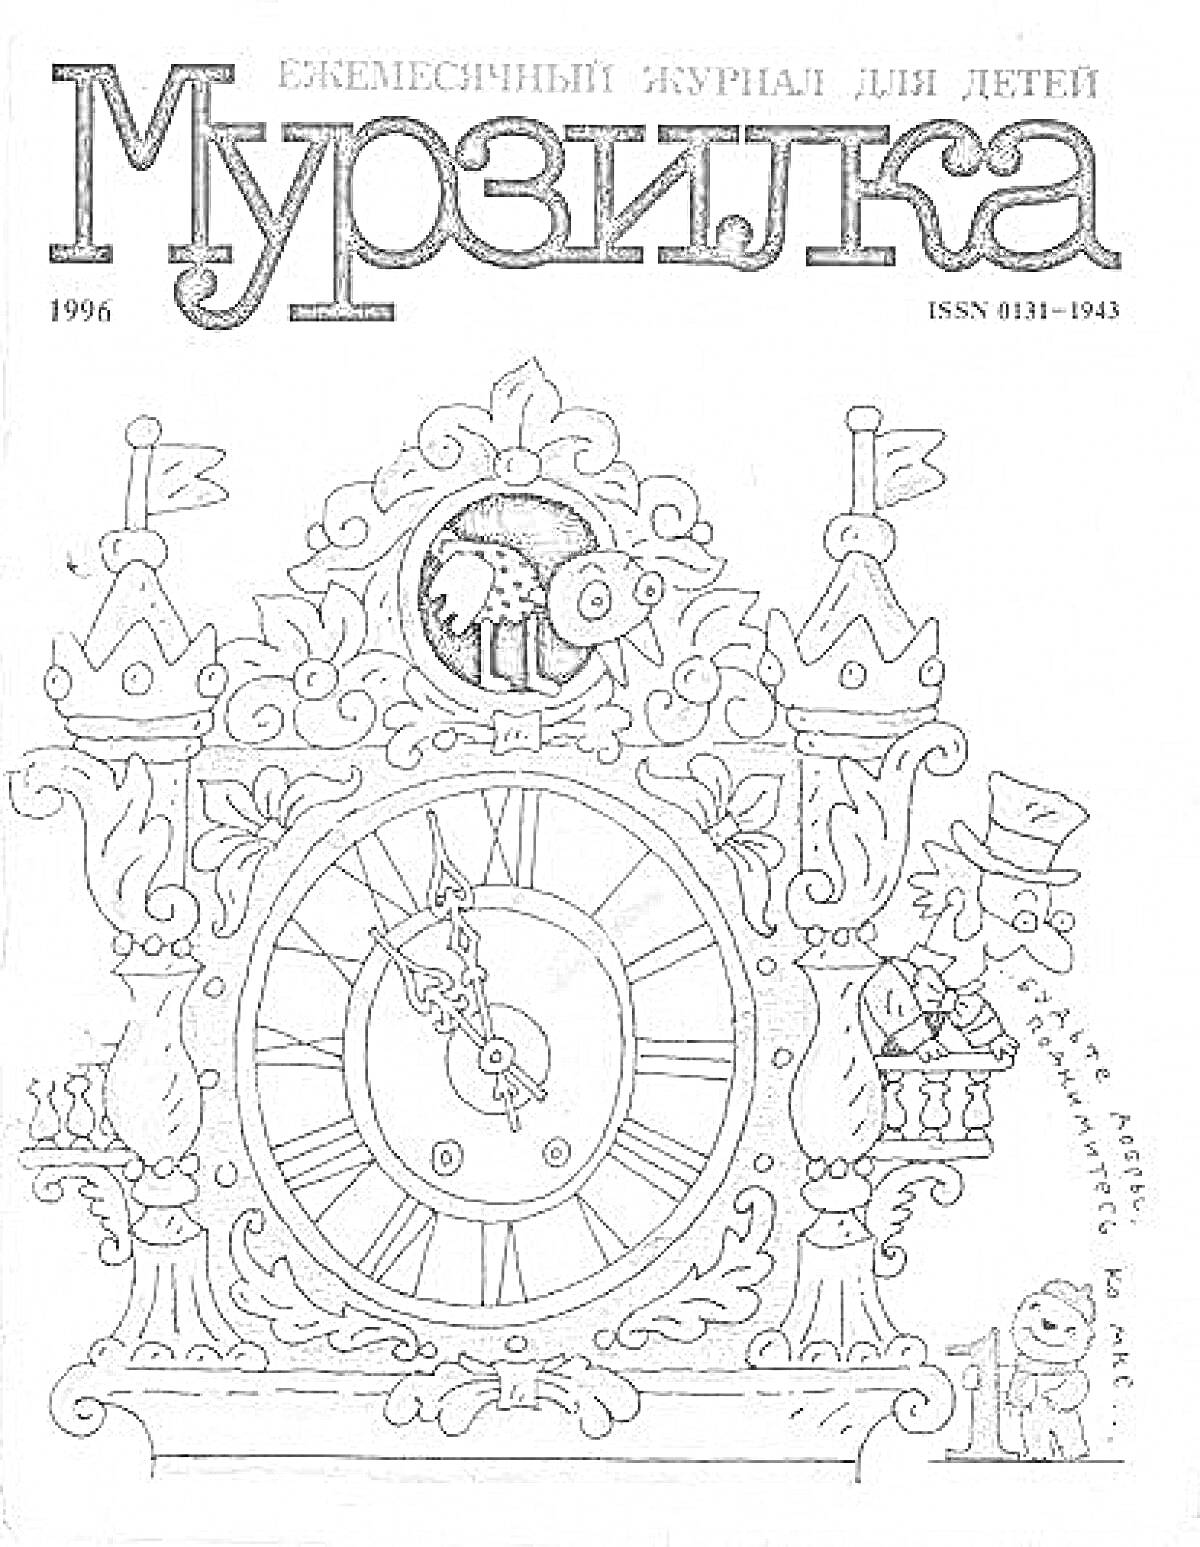 Курантные часы с петухом и персонажами из журнала